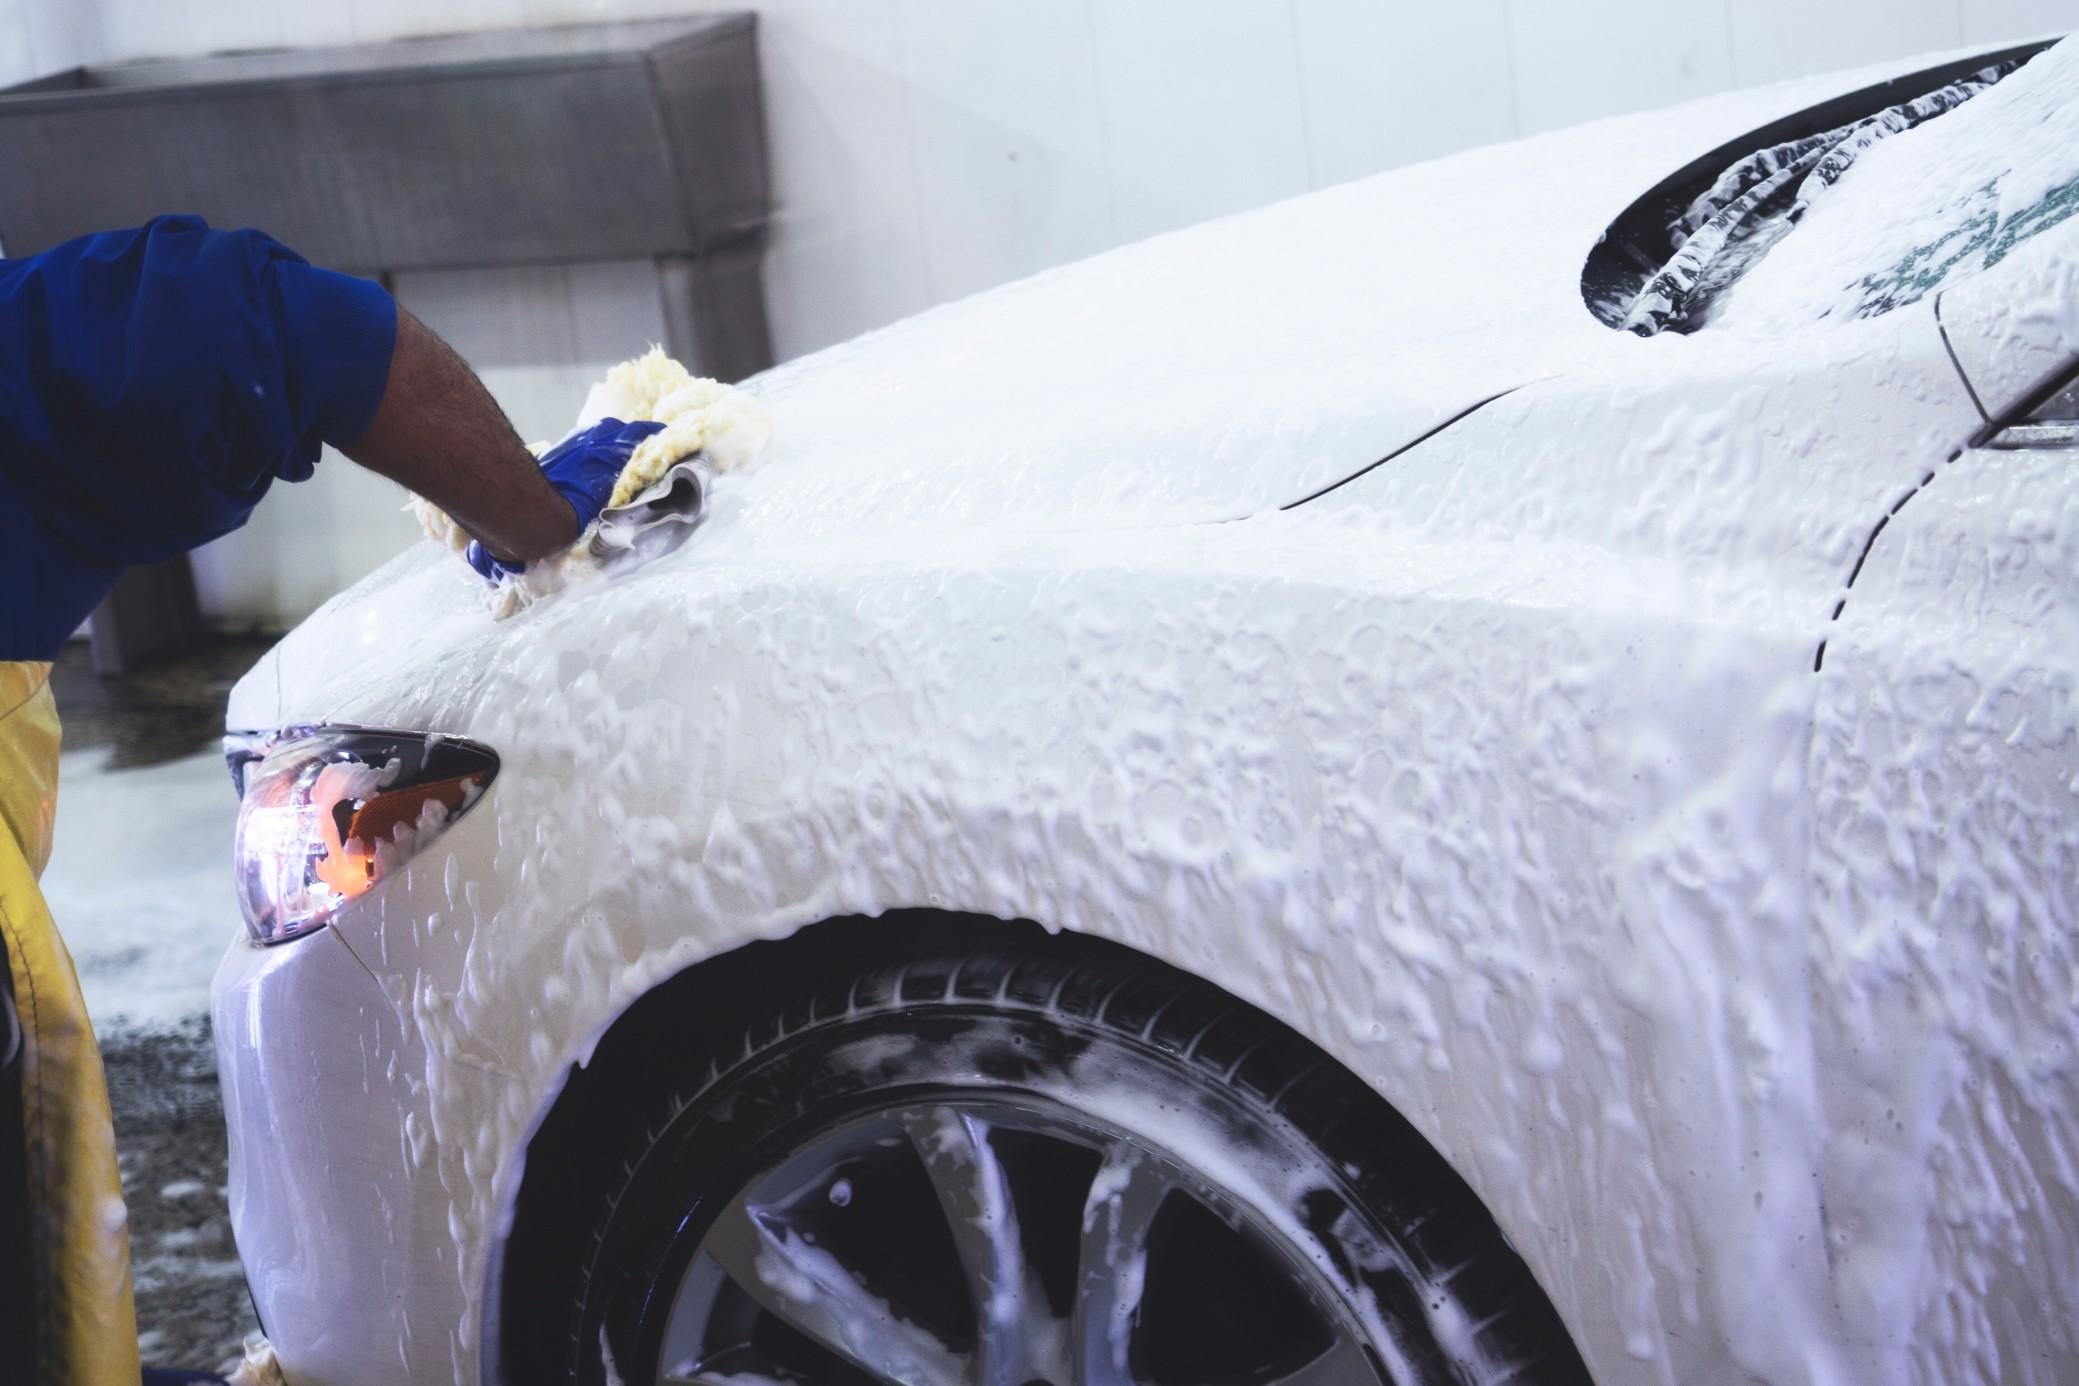 这是一个非常糟糕的主意用肥皂洗你的车。